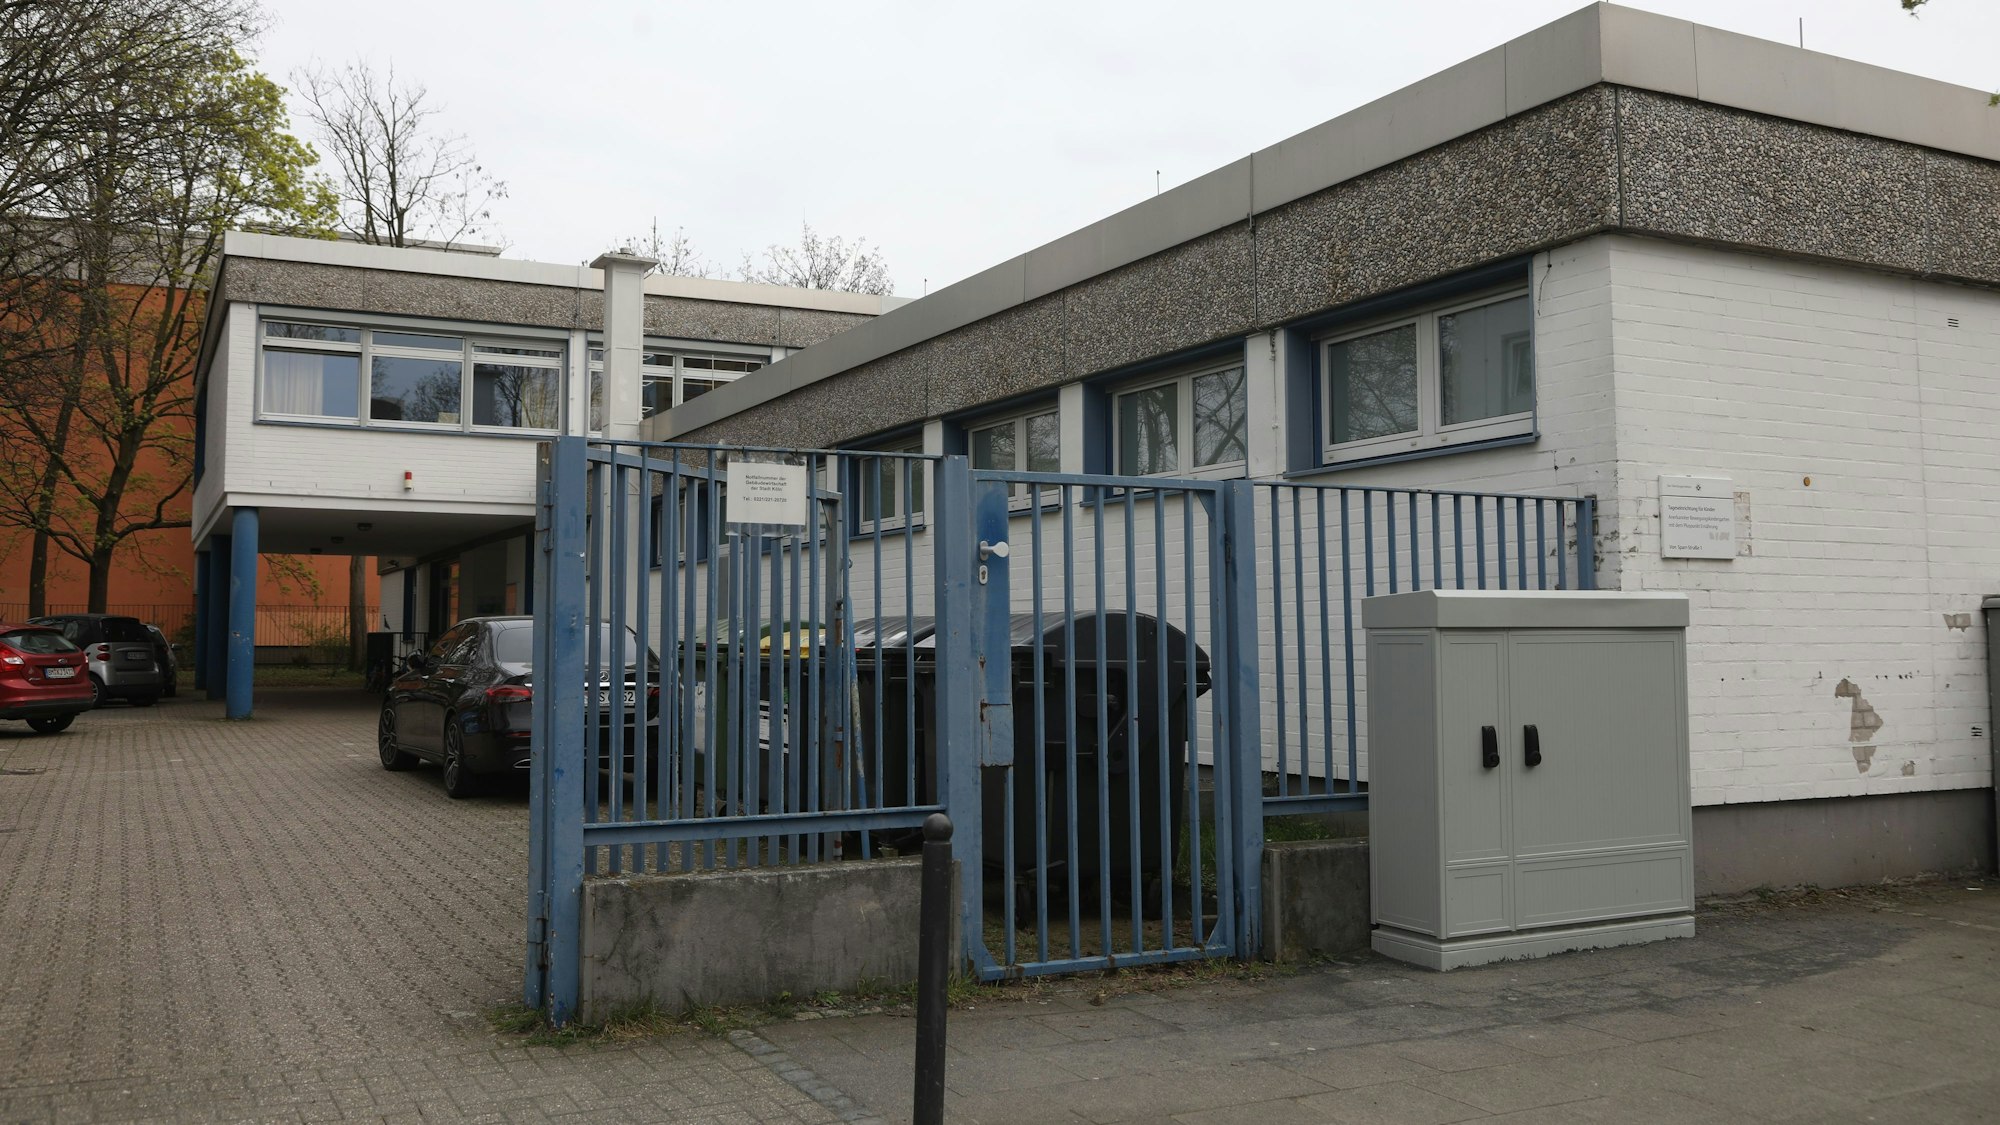 Zu sehen ist eine Kölner Kindertagesstätte von außen mit einem blauen Tor im Vordergrund.